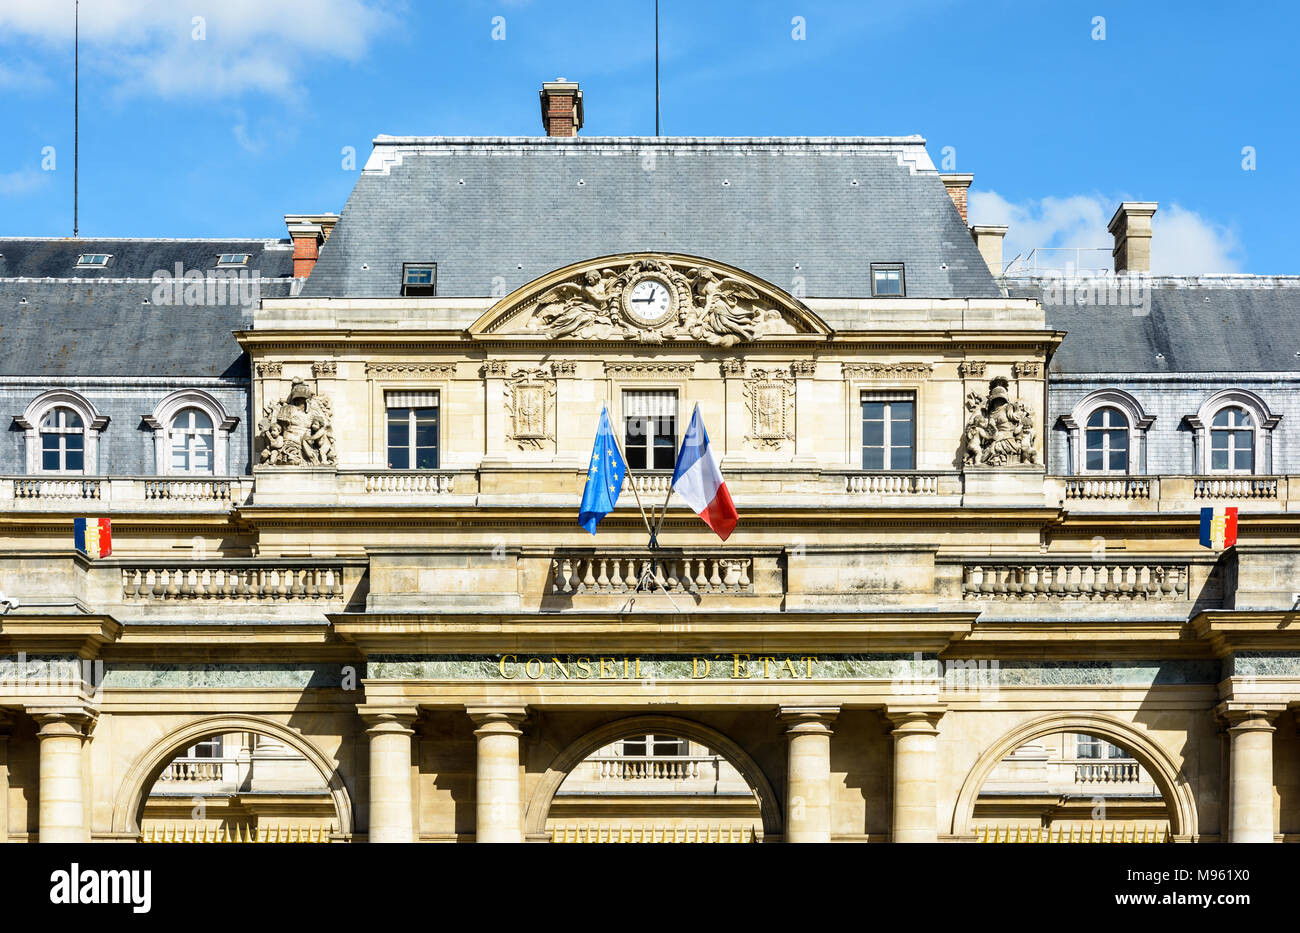 Vue avant de la façade du Palais Royal à Paris, qui abrite le Conseil d'État français, avec les Français et les drapeaux européens. Banque D'Images